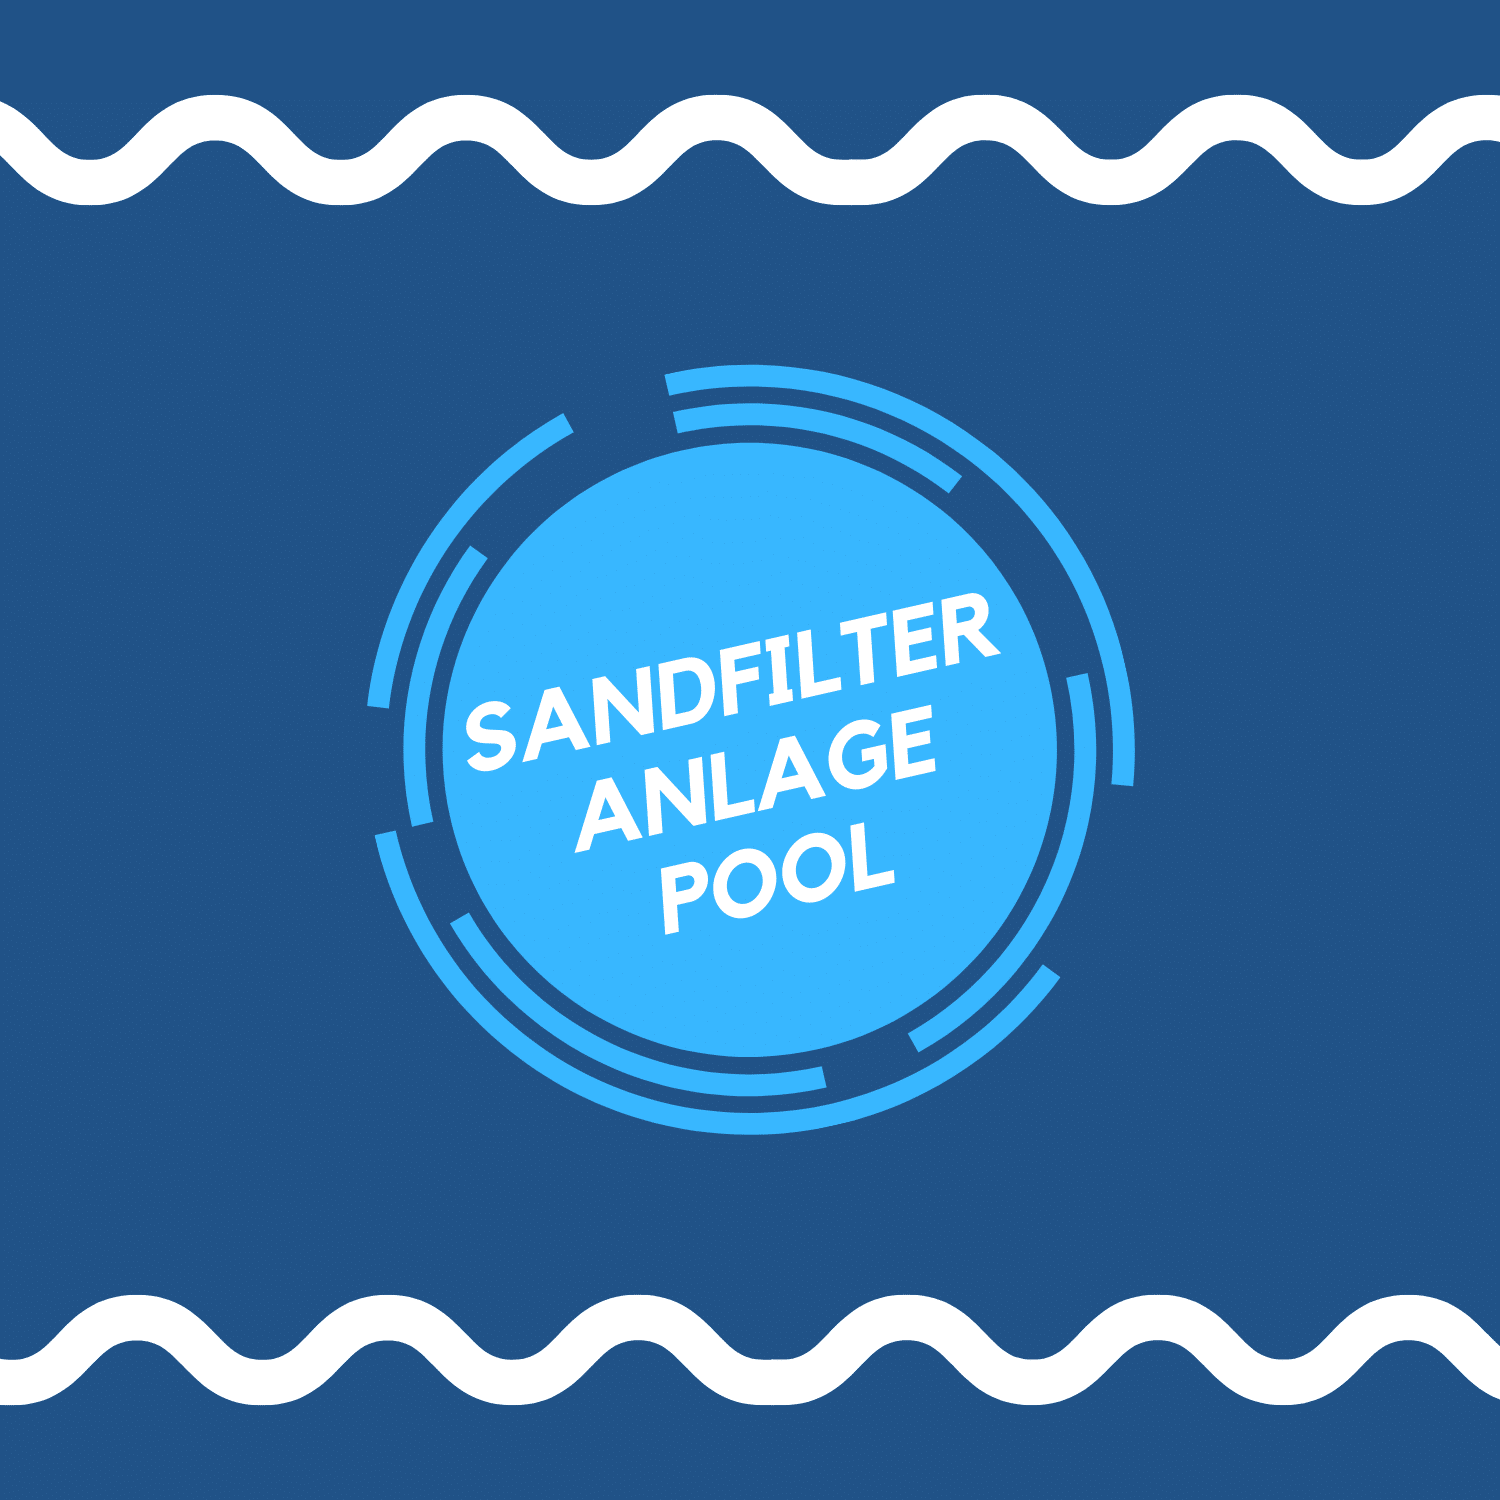 (c) Sandfilteranlage-pool.com